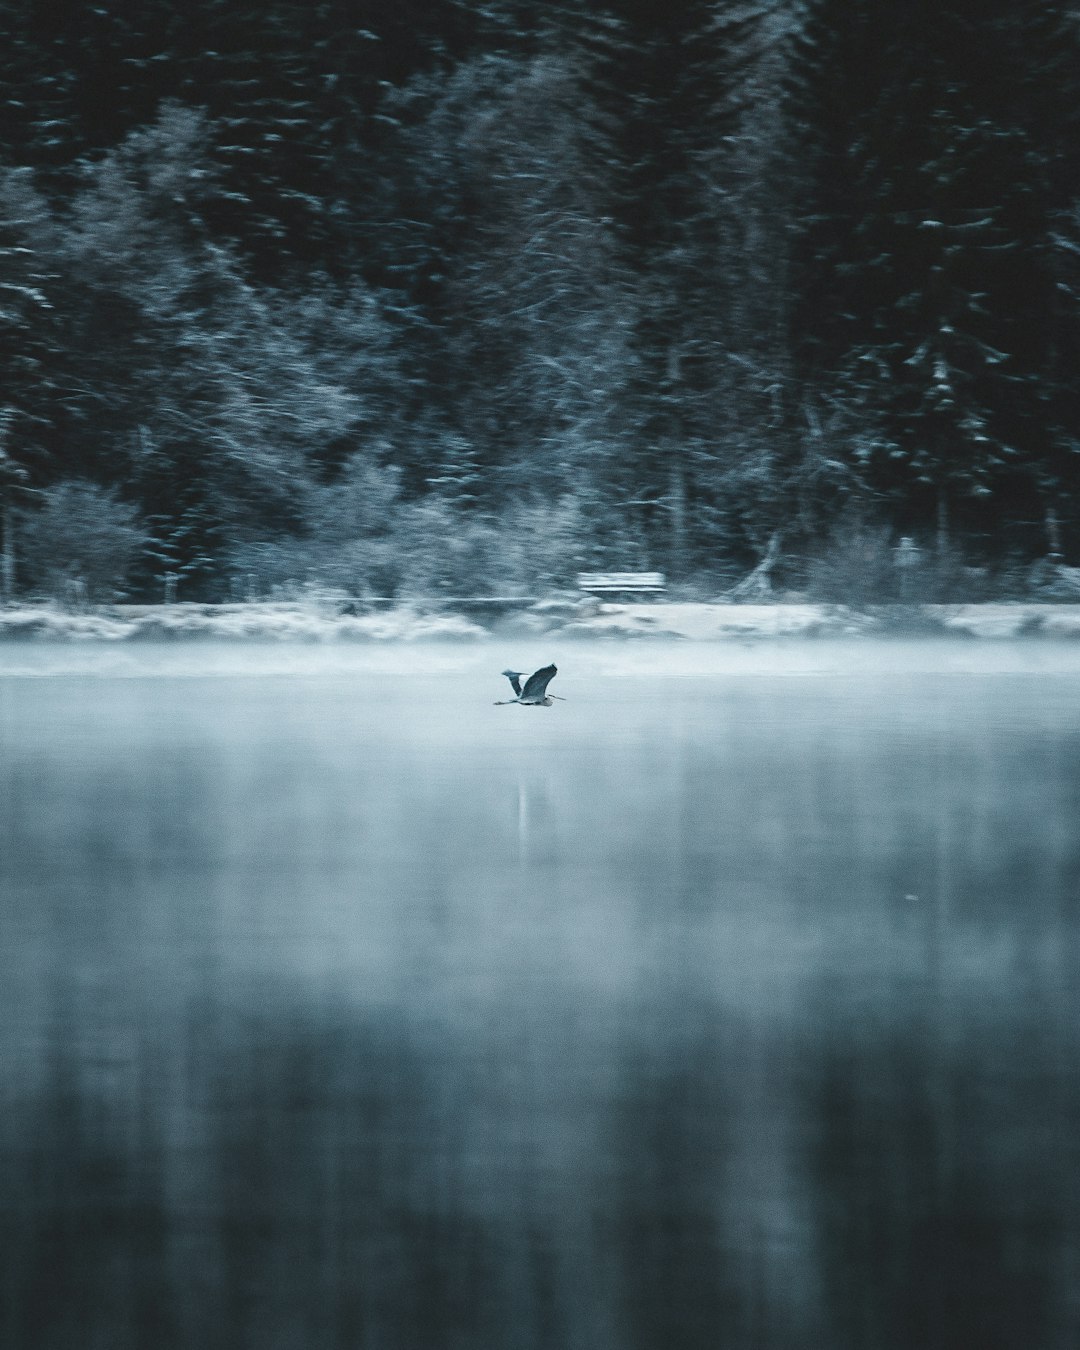 black duck on lake during daytime